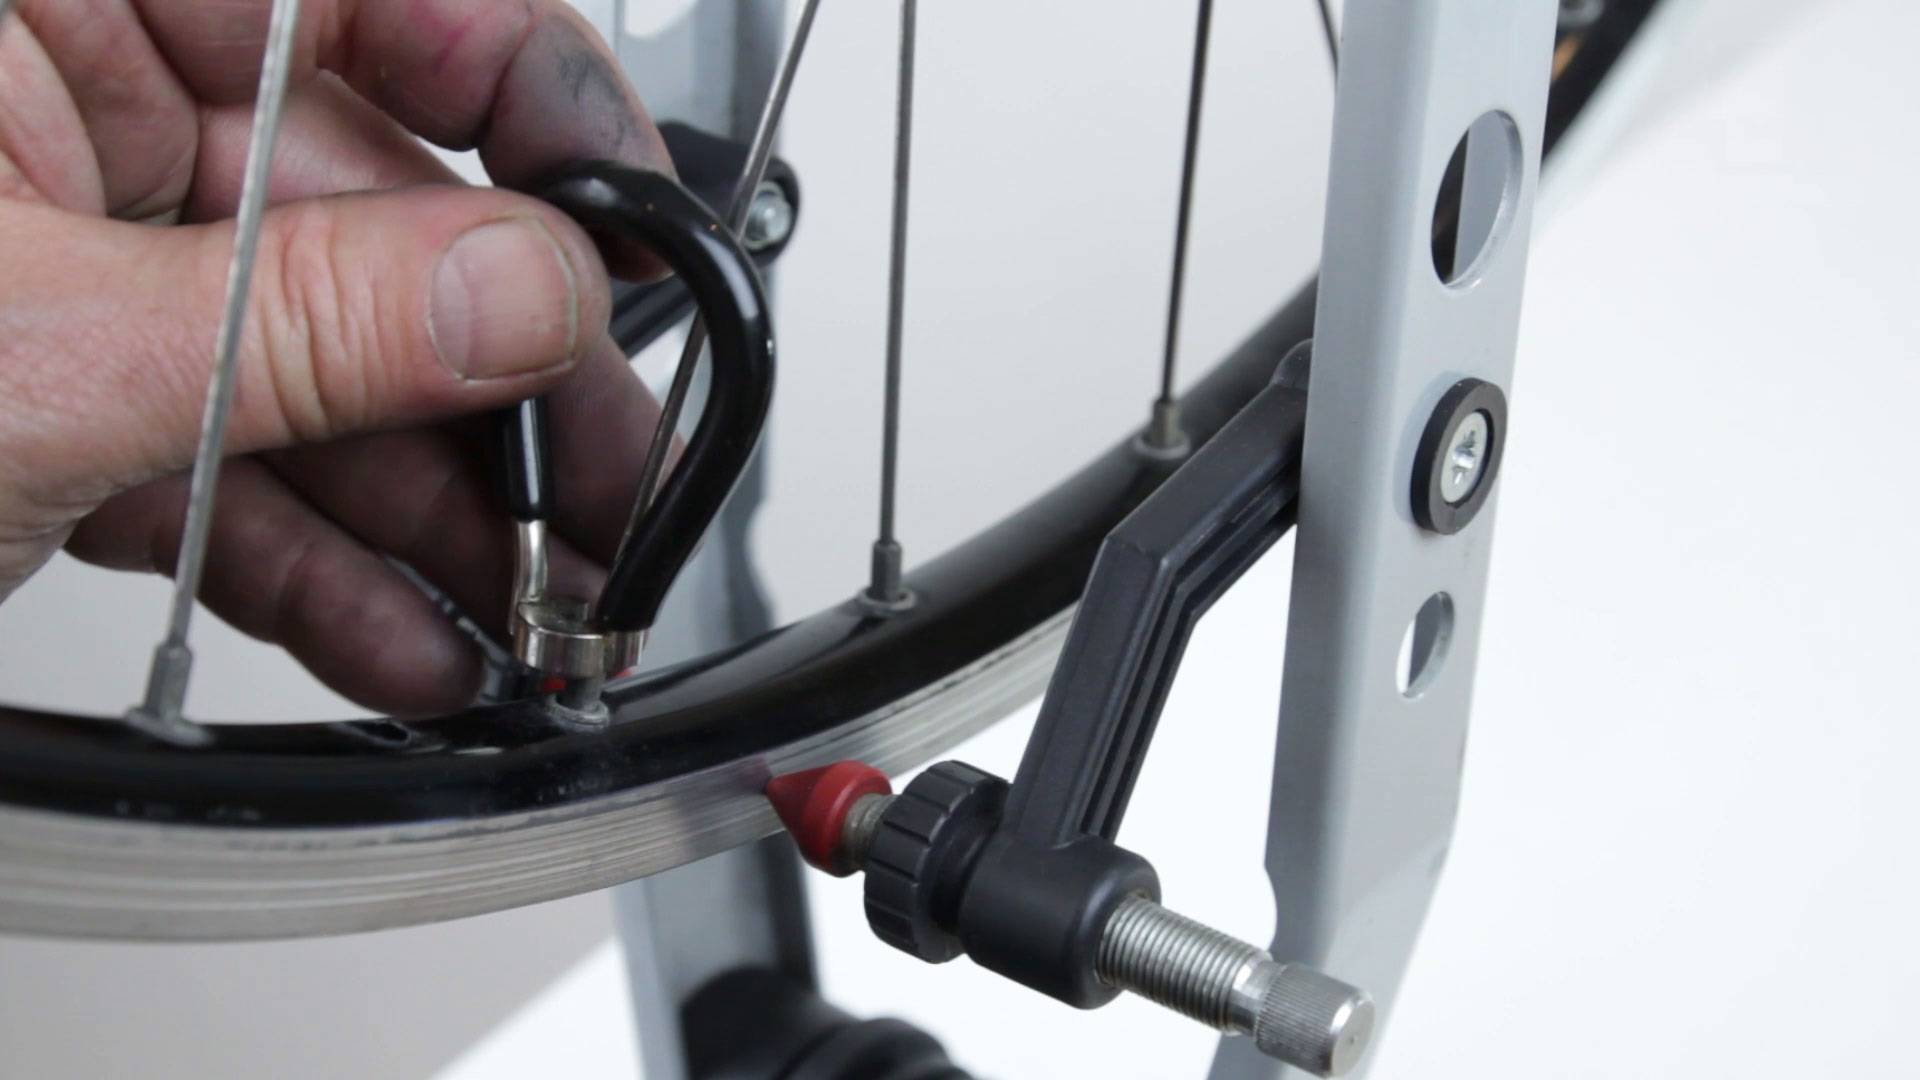 Как убрать восьмерку на колесе велосипеда - заднем и переднем, видео инструкция